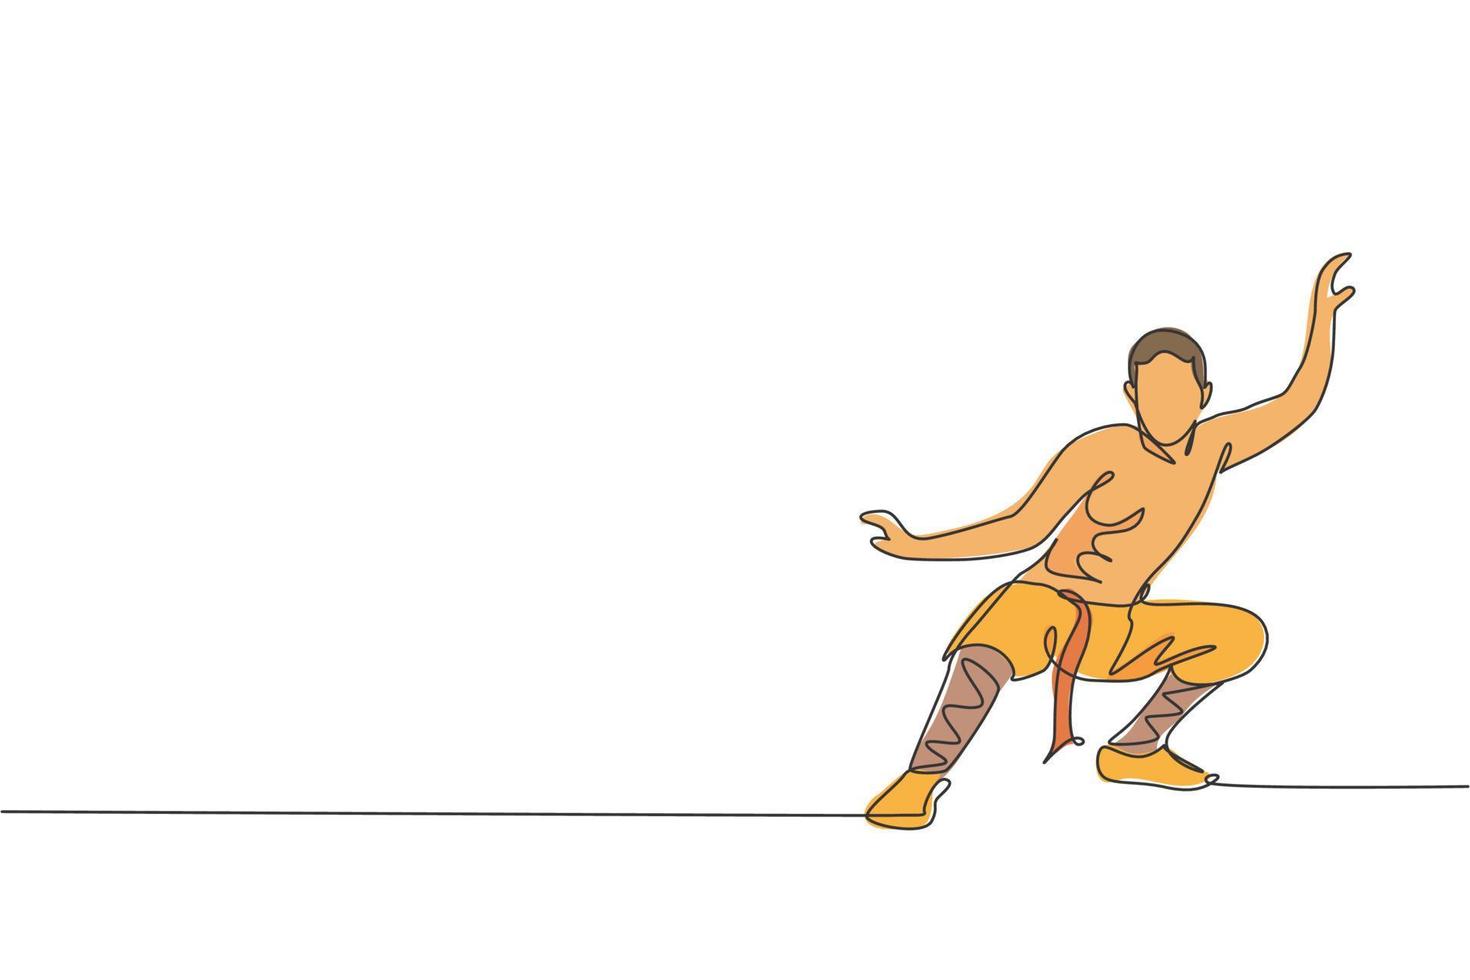 um desenho de linha contínua do jovem monge shaolin pratica o estilo kung fu no terreno do templo. conceito de esporte combativo chinês tradicional. gráfico de ilustração vetorial design de desenho de linha única dinâmica vetor